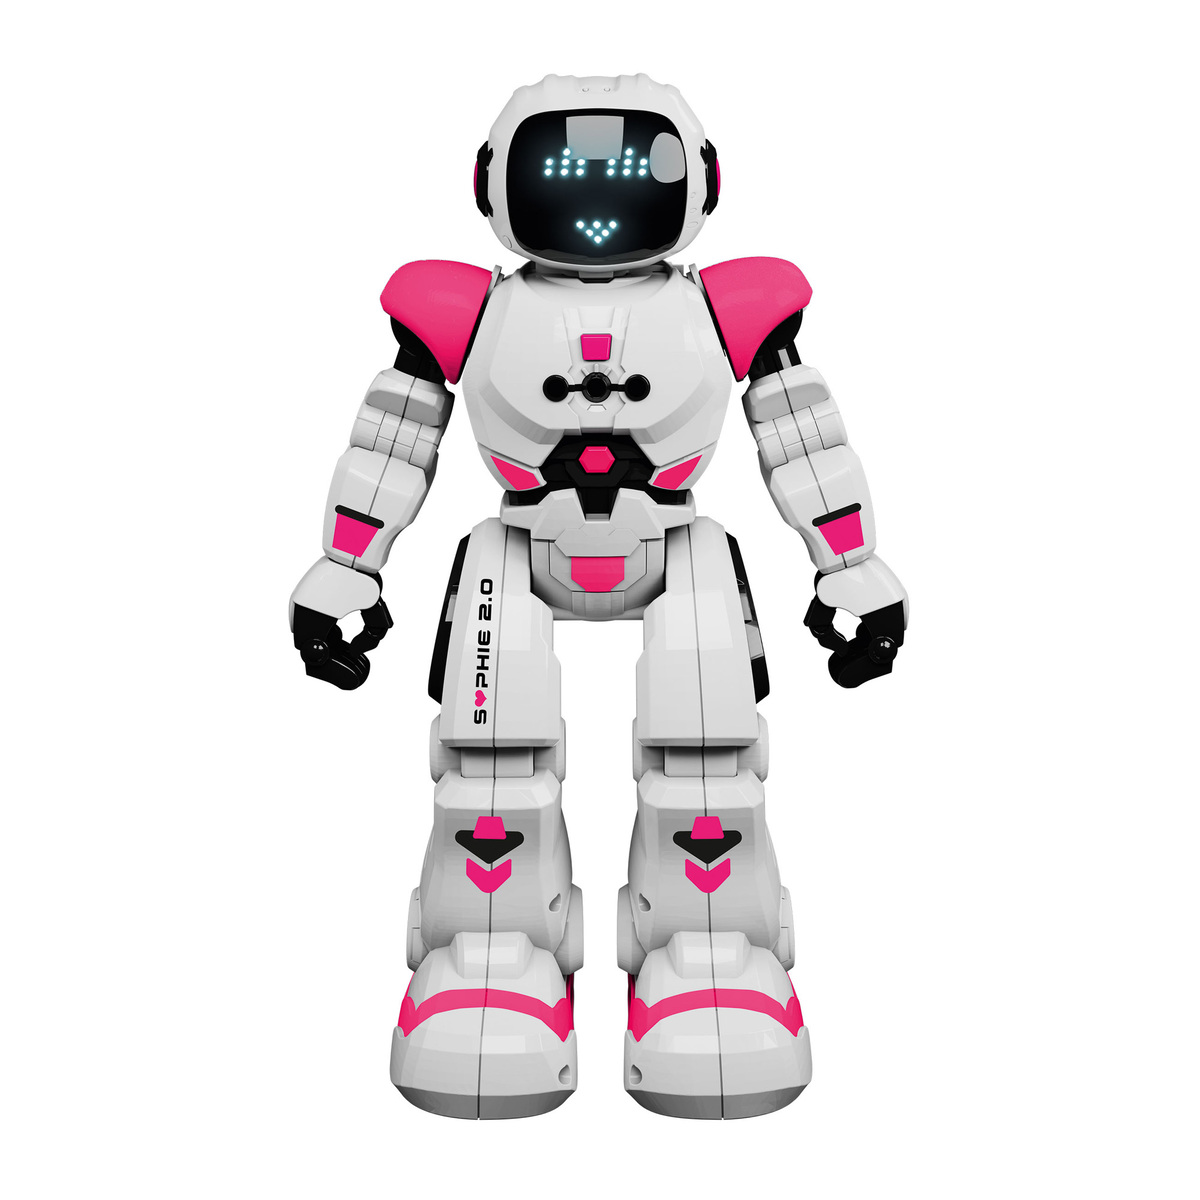 Xtrem Bots Sophie 2.0 Robot, XT3803288 Online at Best Price